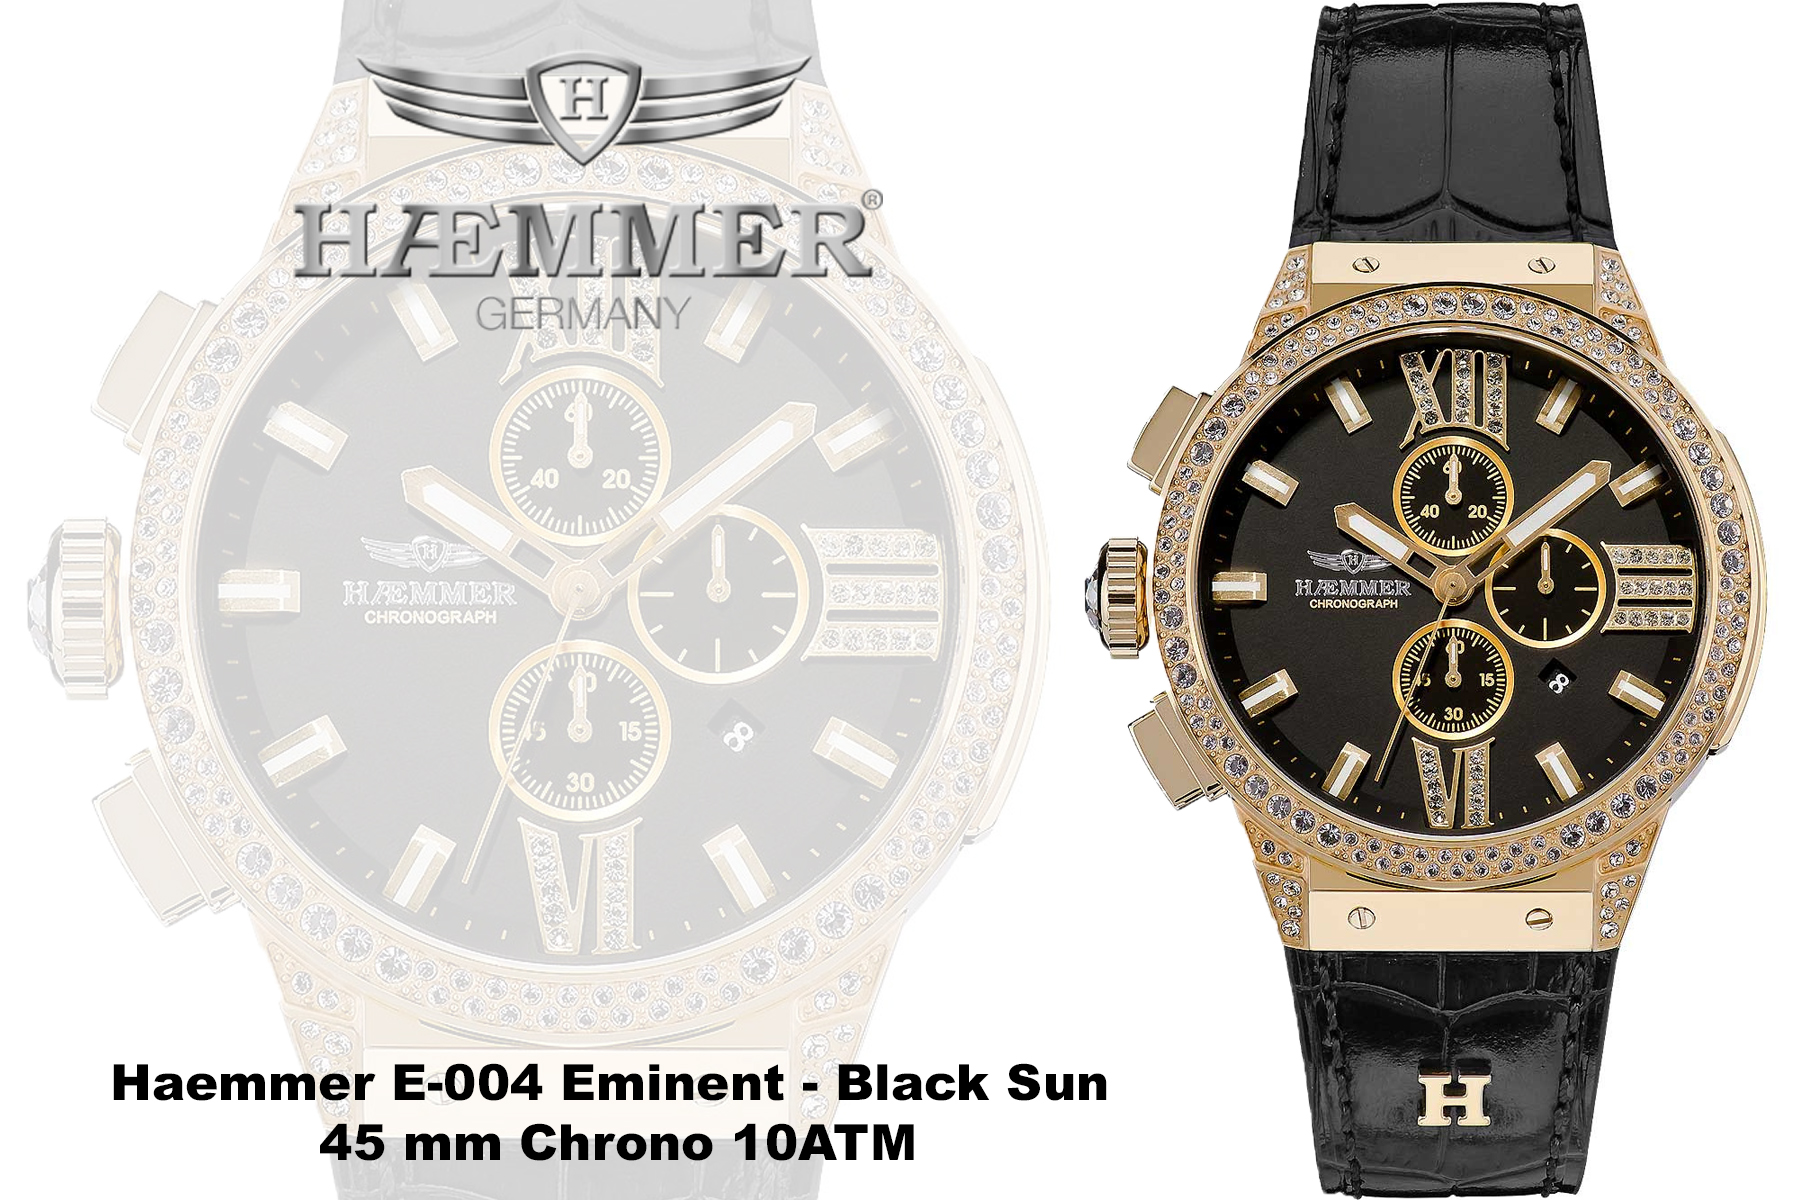 uhrenshop24.ch - Haemmer E-004 Eminent - Black Sun 45 mm